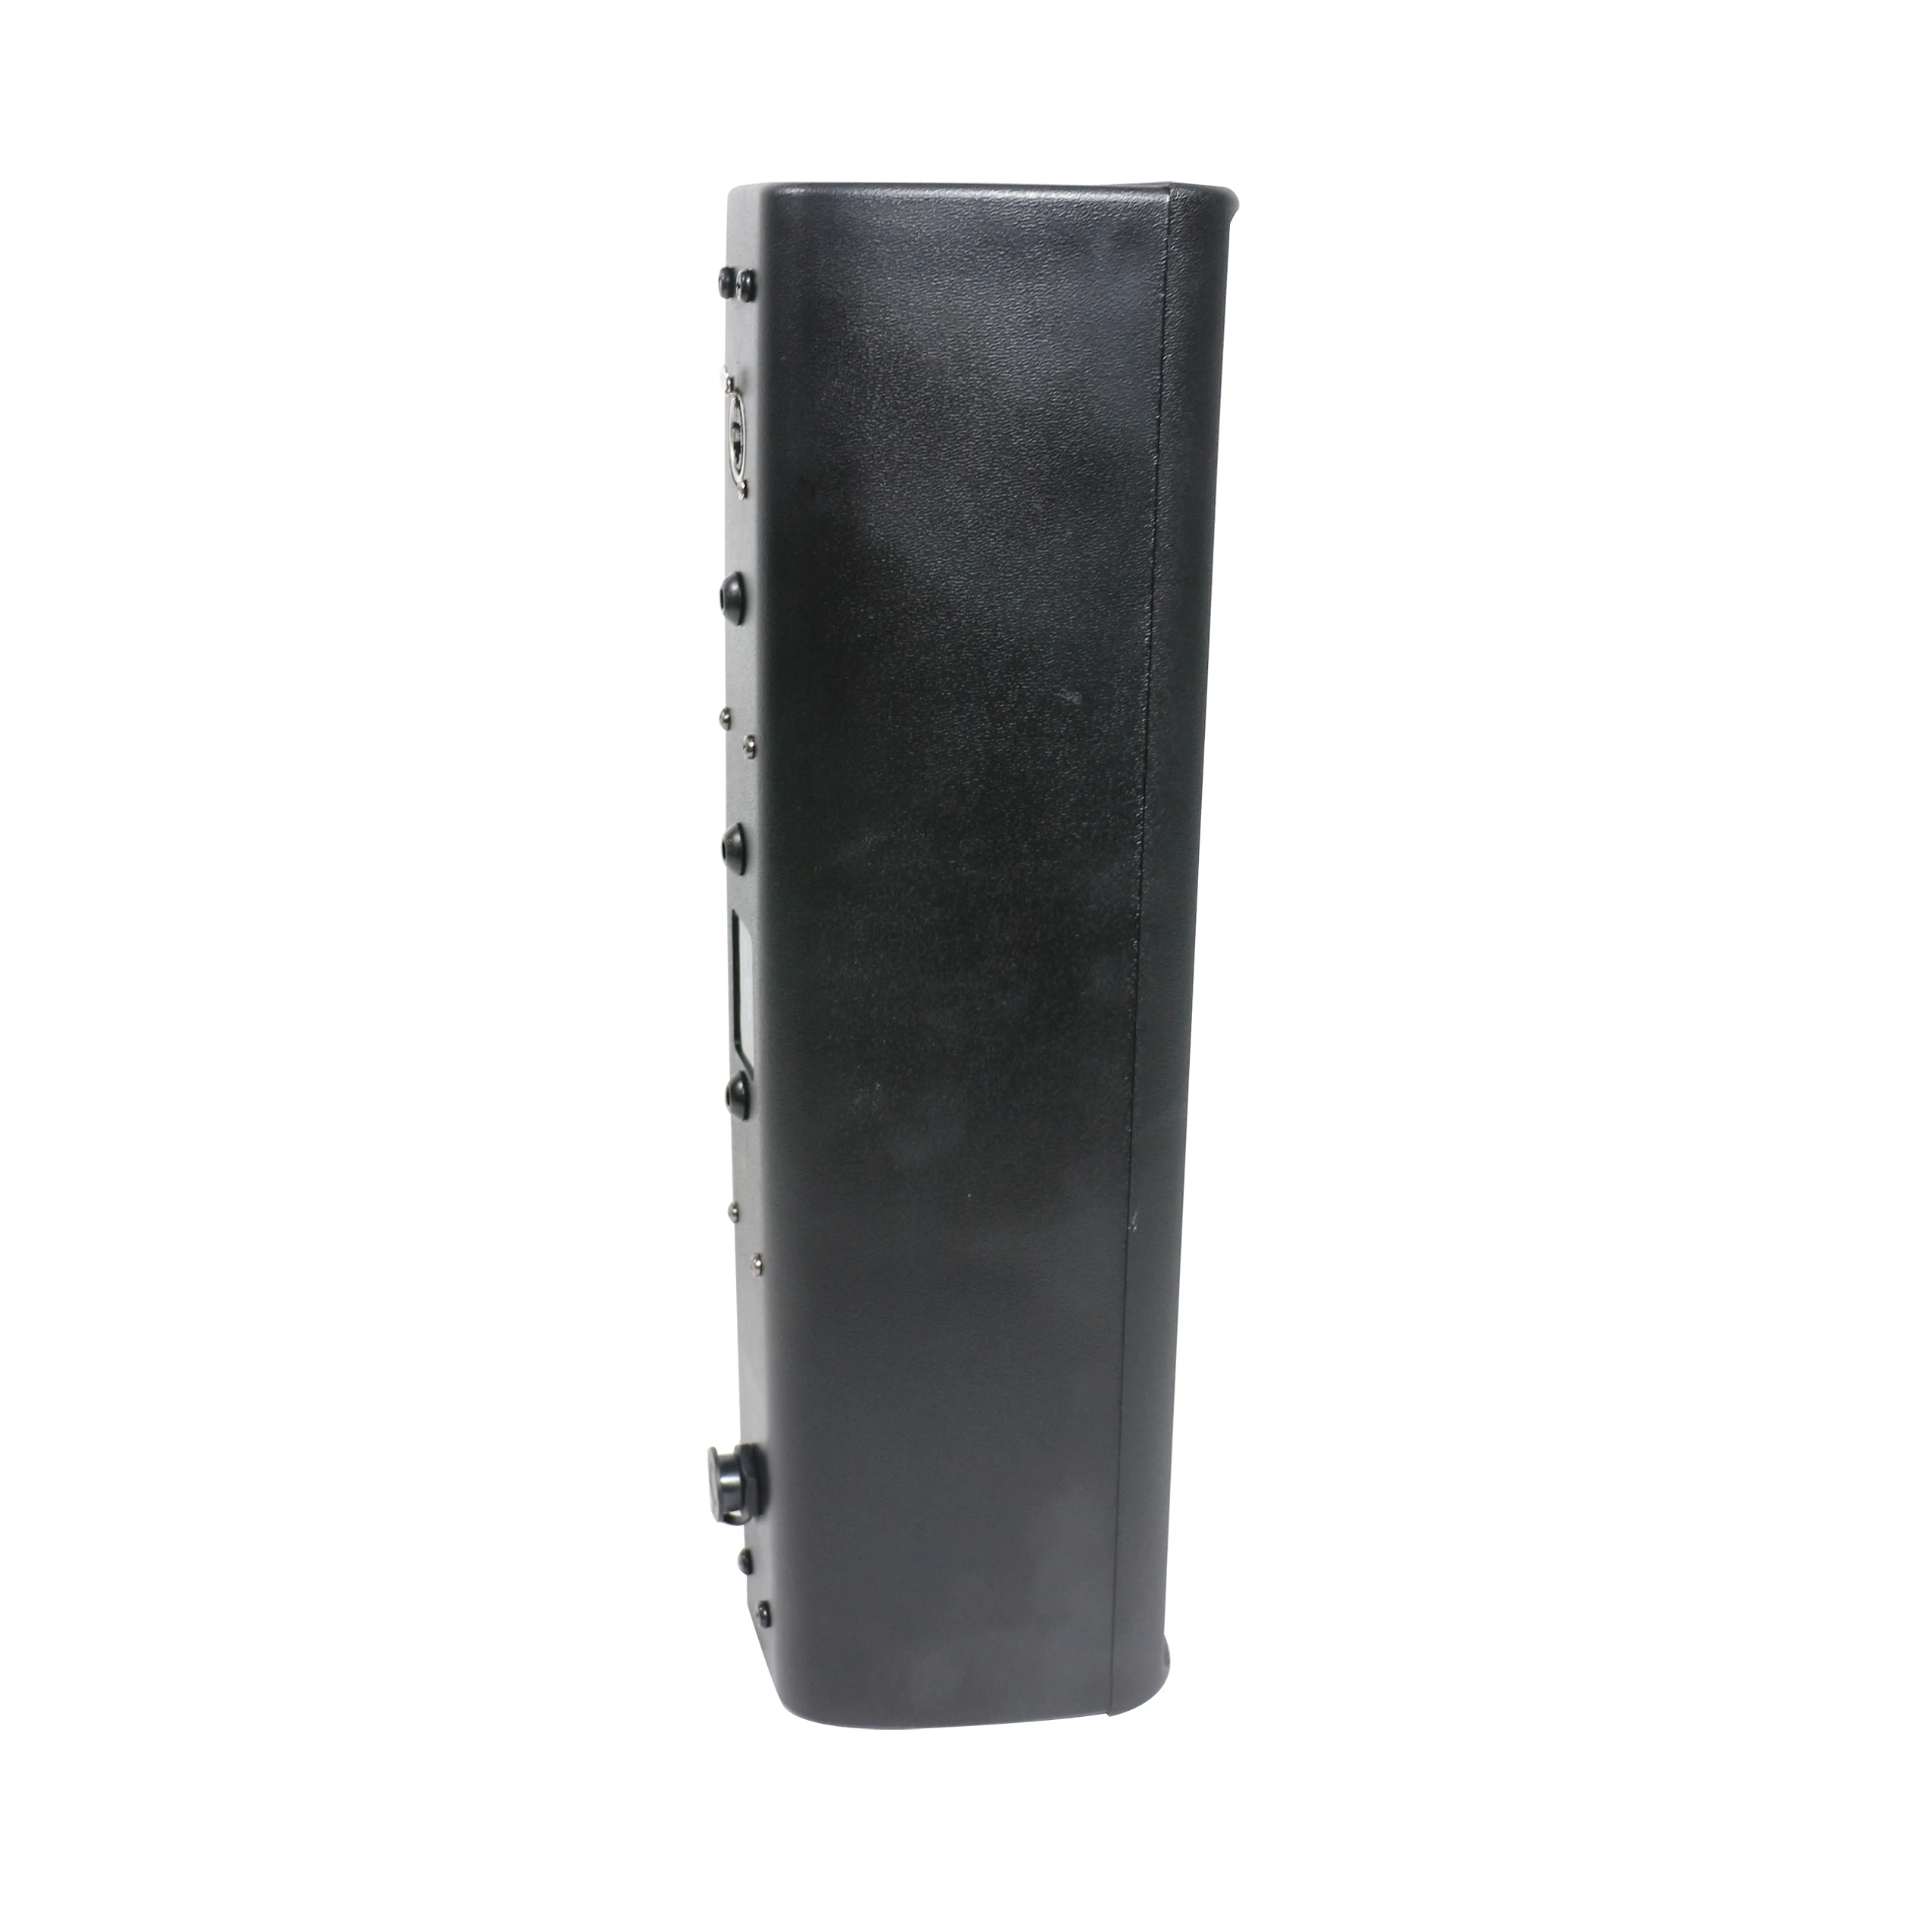 100 Вт пластиковый корпус черный/белый PoE DSP управление Данте звуковая колонка с интерфейсом RJ45